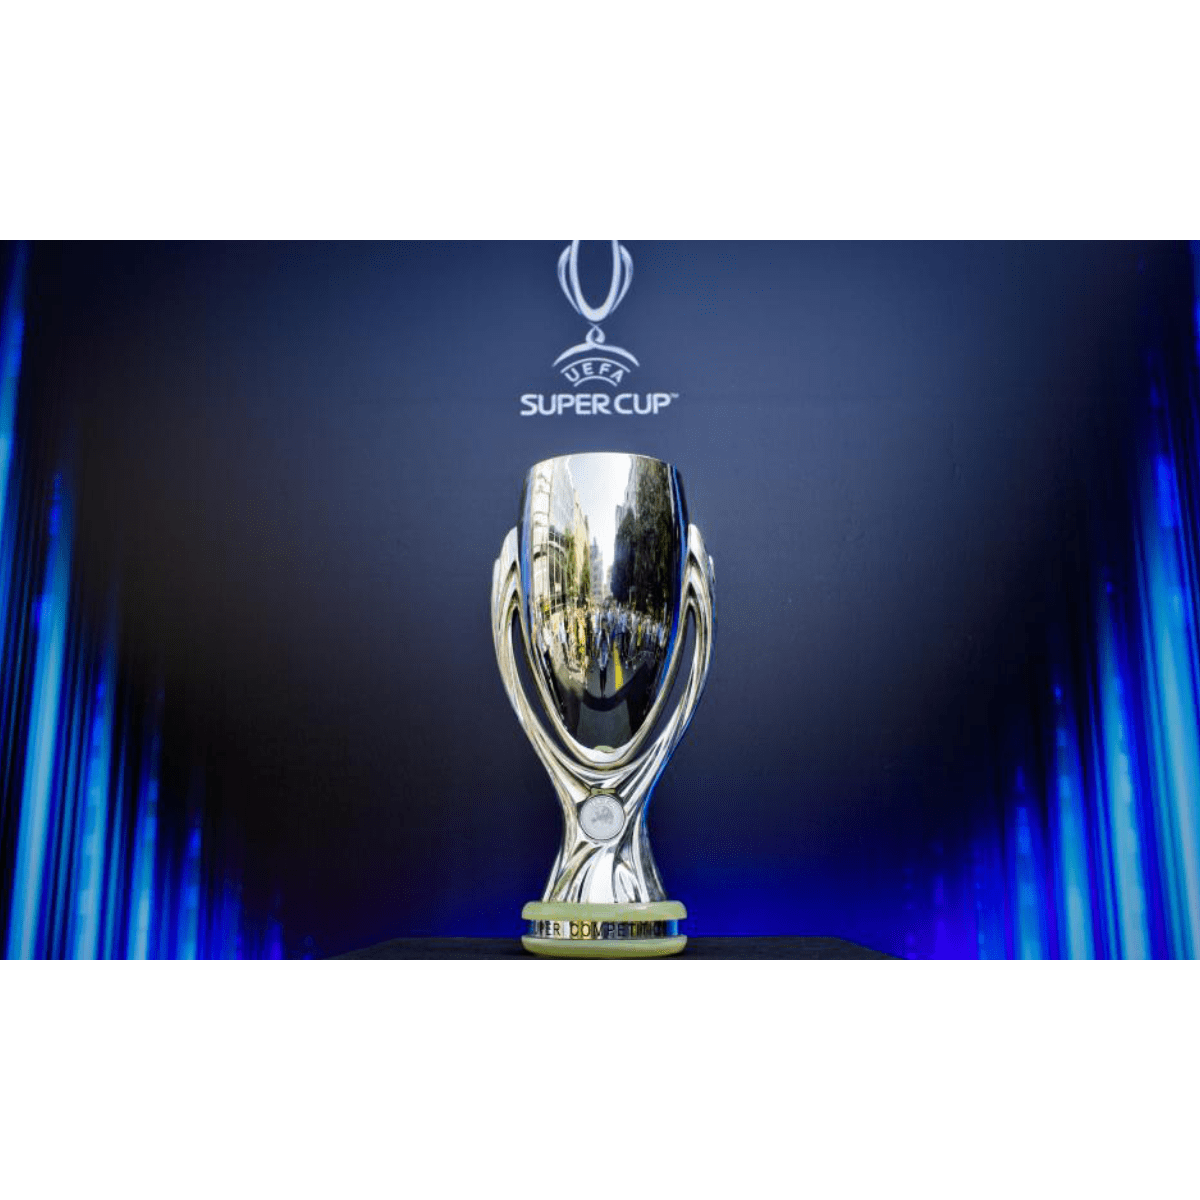 TAS mantém exclusão das equipas russas das provas da UEFA em 2022/23 -  Futebol Internacional - SAPO Desporto